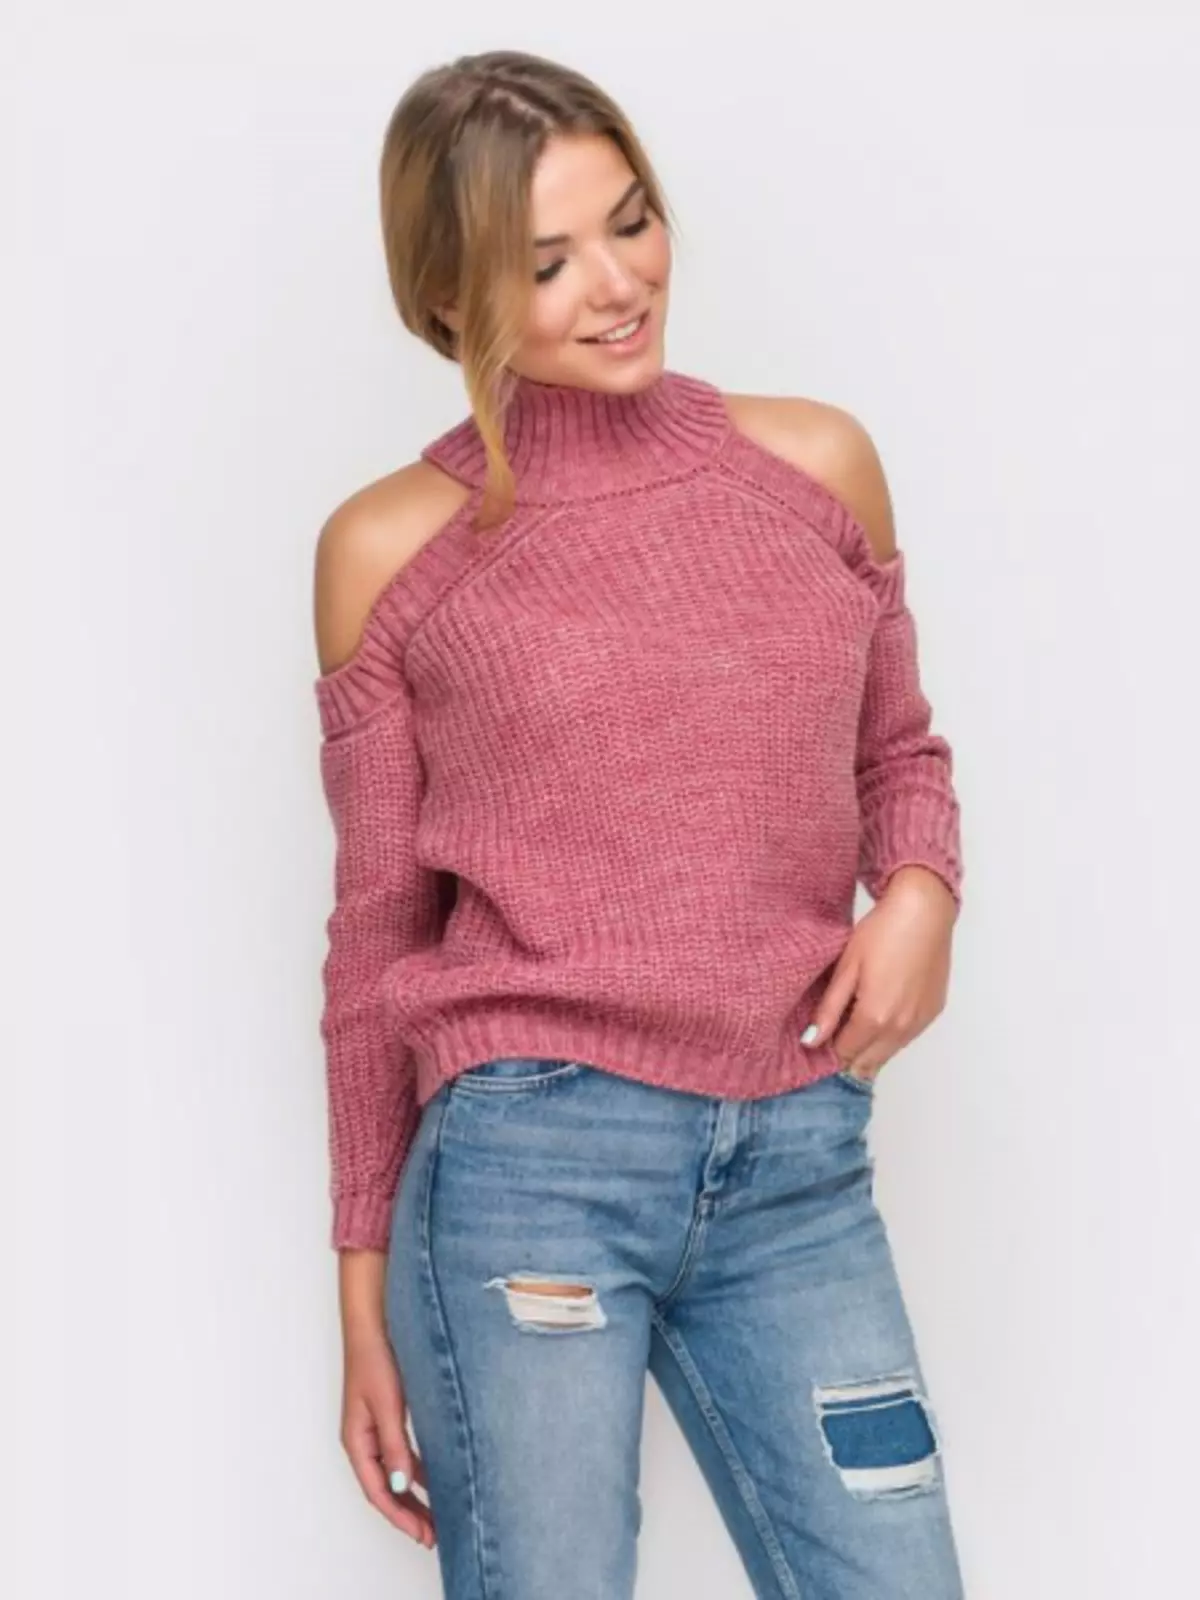 Sweater e bulehileng li-bratebers: Knitting tyting patente le foto